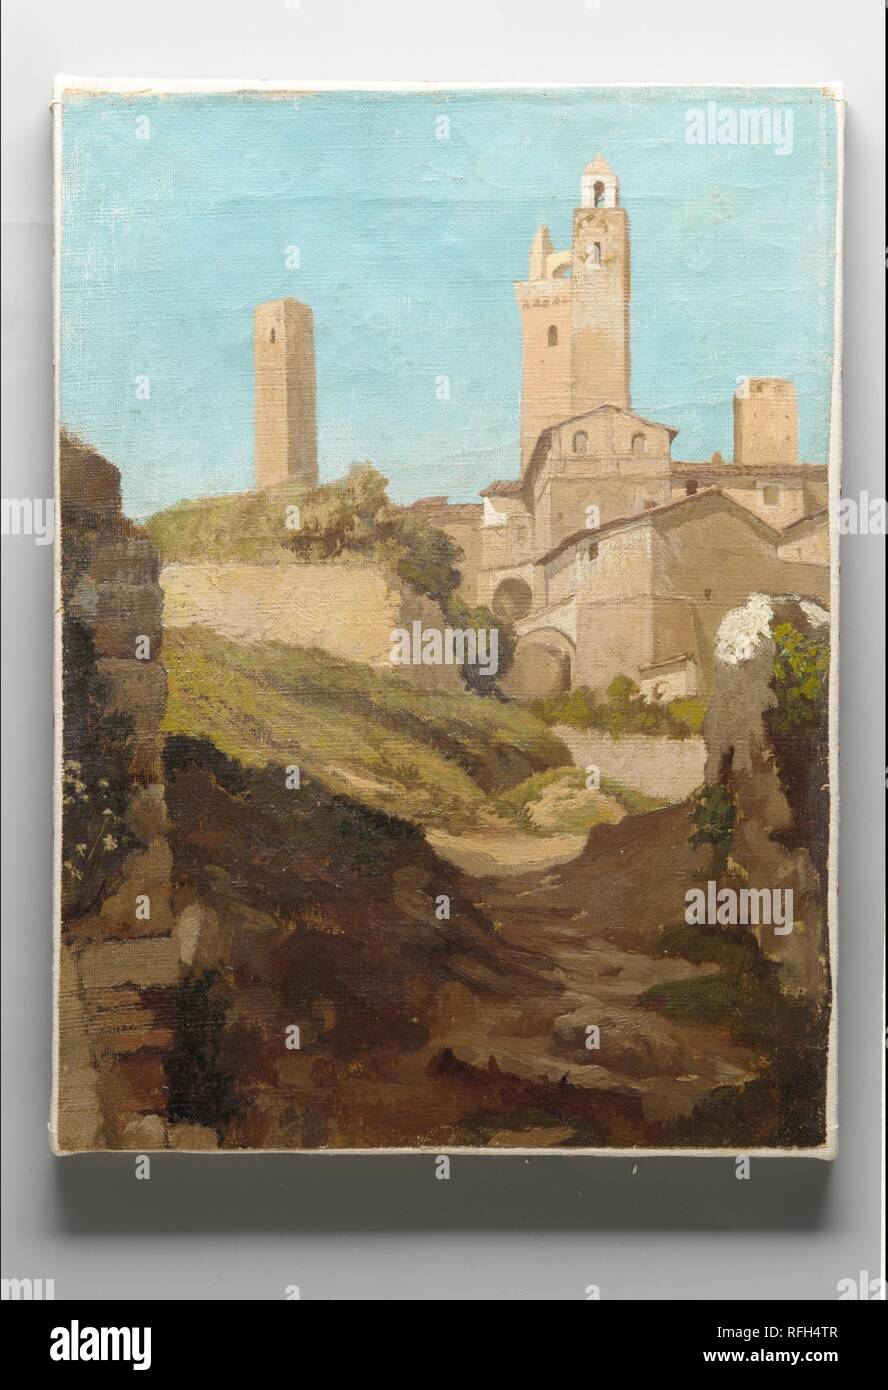 San Gimignano. Artiste : Elihu Vedder (American, New York 1836-1923 Rome). Dimensions : 13 7/8 x 10 3/4 in. (35,2 x 27,3 cm). Pendant ses études à Paris à la fin des années 1850, devint Vedder déçu de l'académisme français et a décidé de se rendre en Italie pour étudier le travail de maîtres italiens. À Florence, il fréquentait le Caffè Michelangelo, où il a rencontré un groupe de jeunes peintres Toscans, surtout connu sous le nom de Macchiaioli, qui s'émancipent le formalisme de l'Accademia en faveur d'une plus grande spontanéité, plein-air du style inspiré par la nature. Vedder est d'avis de San Gimignano, une ville médiévale pittoresque hill Banque D'Images